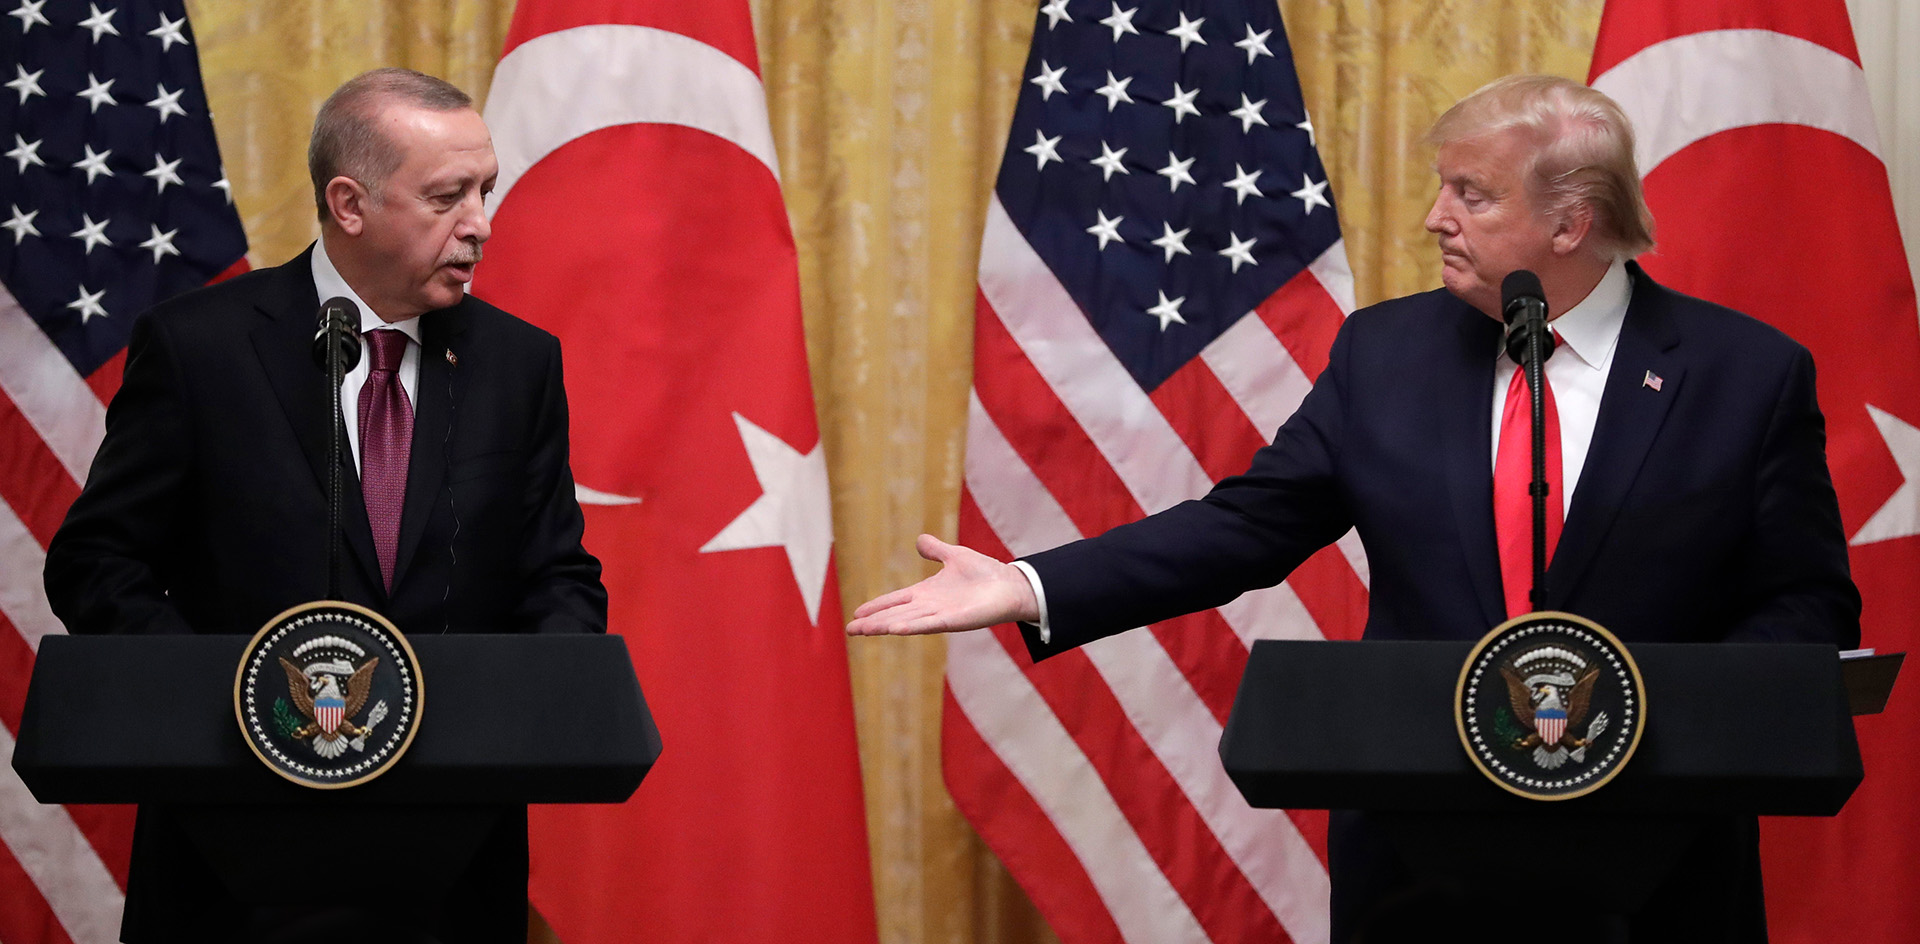 С-400 раздора. Штаты и Турция торгуются за российское вооружение